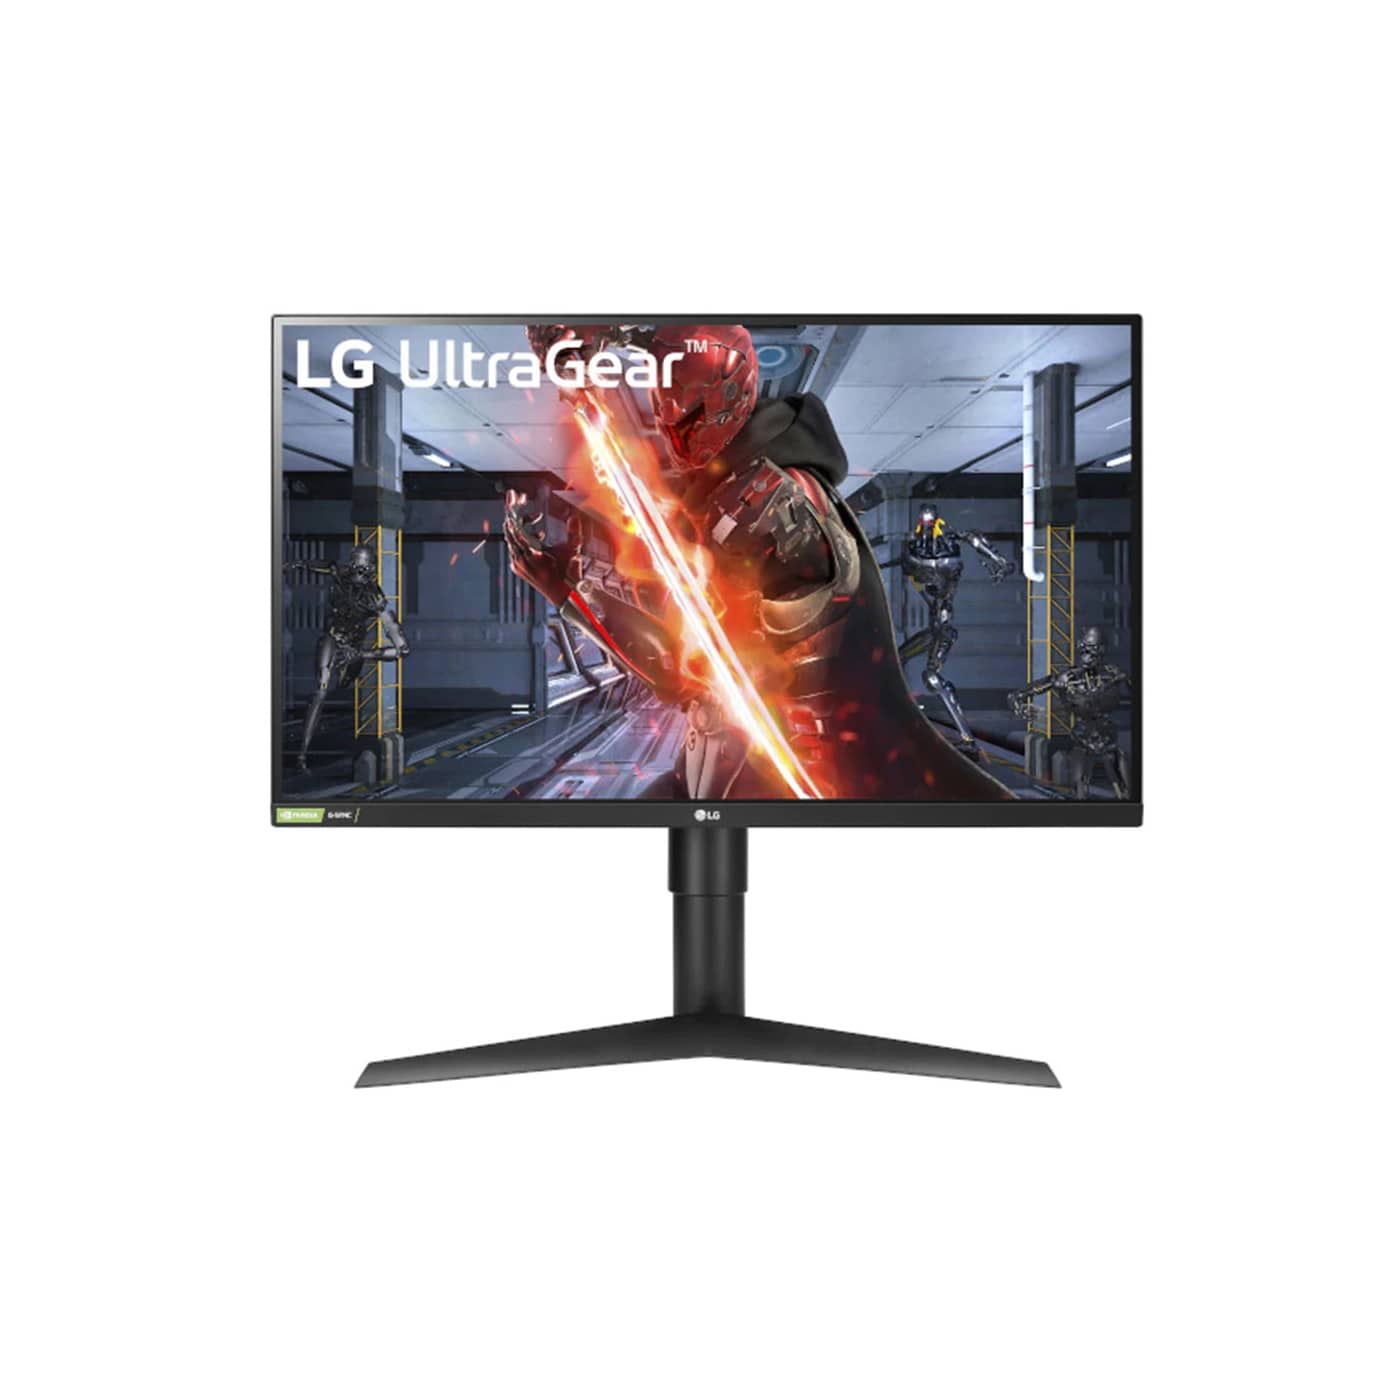 Игровой монитор LG 27GL850-B 27, 2560 x 1440, IPS, черный цена и фото